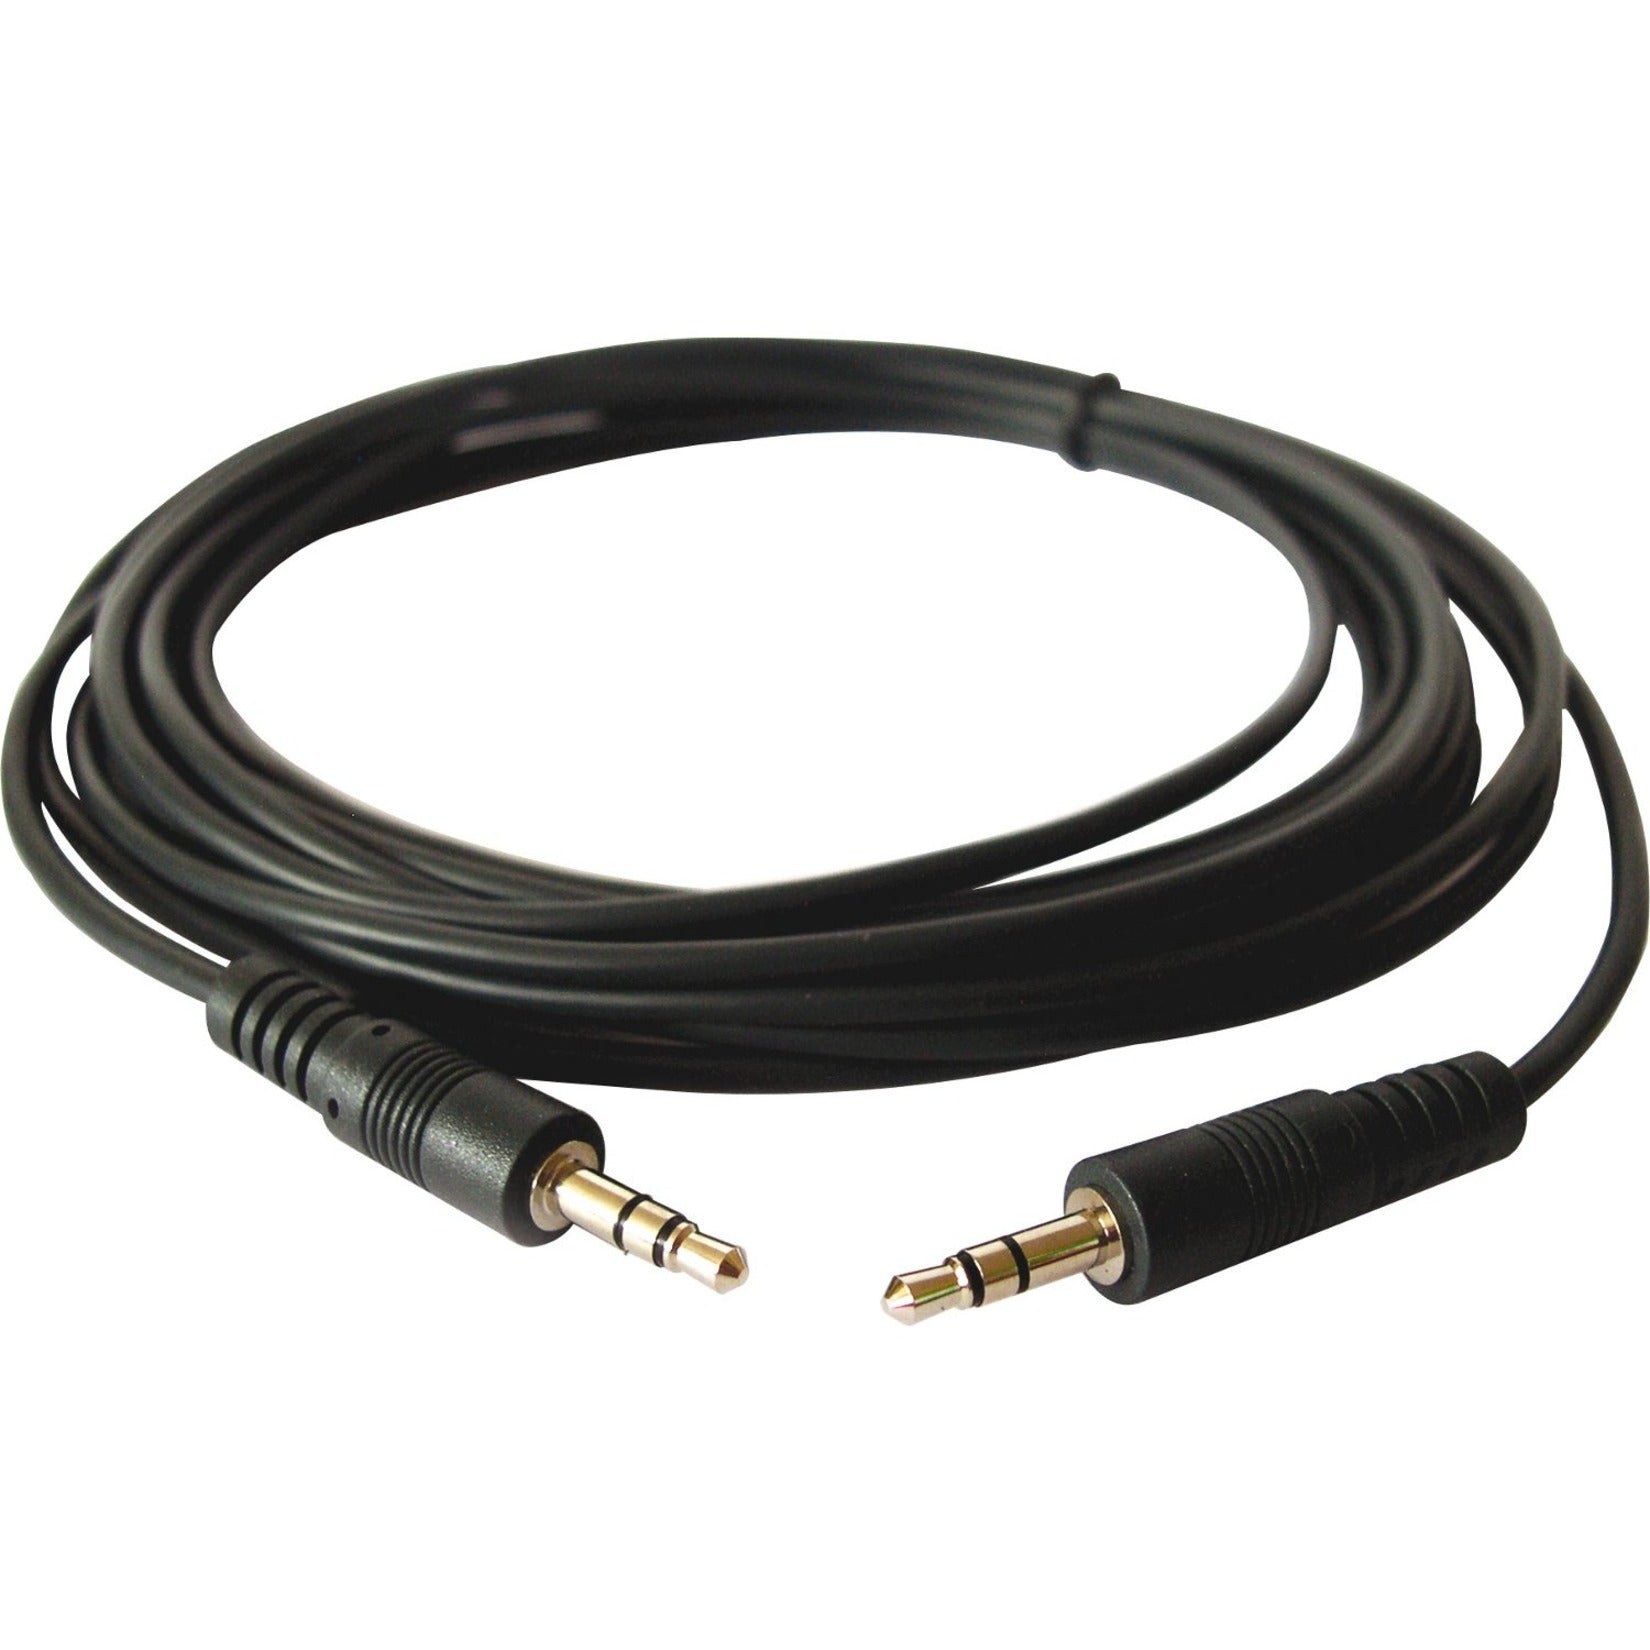 Kramer Kramer 95-0101010 Cable de Audio Estéreo de 3.5 mm (M) a 3.5 mm (M) 10 ft moldeado blindaje de cobre